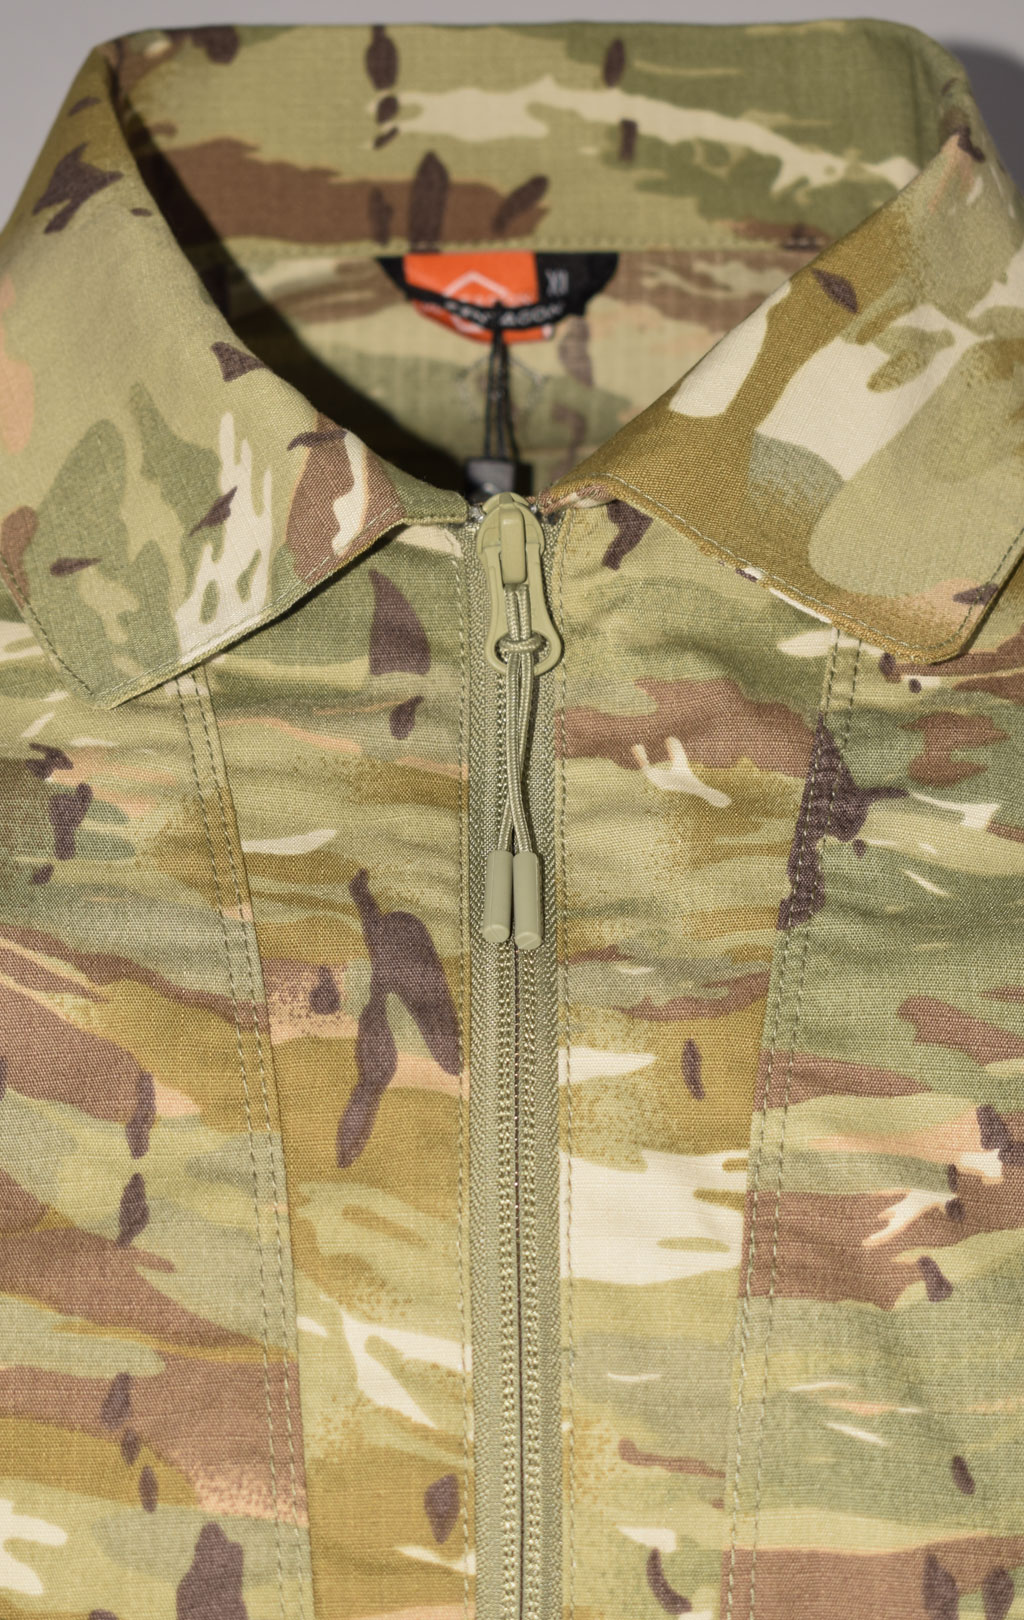 Рубашка Combat shirt Pentagon RANGER TAC-FRESH camo-penta 02013 